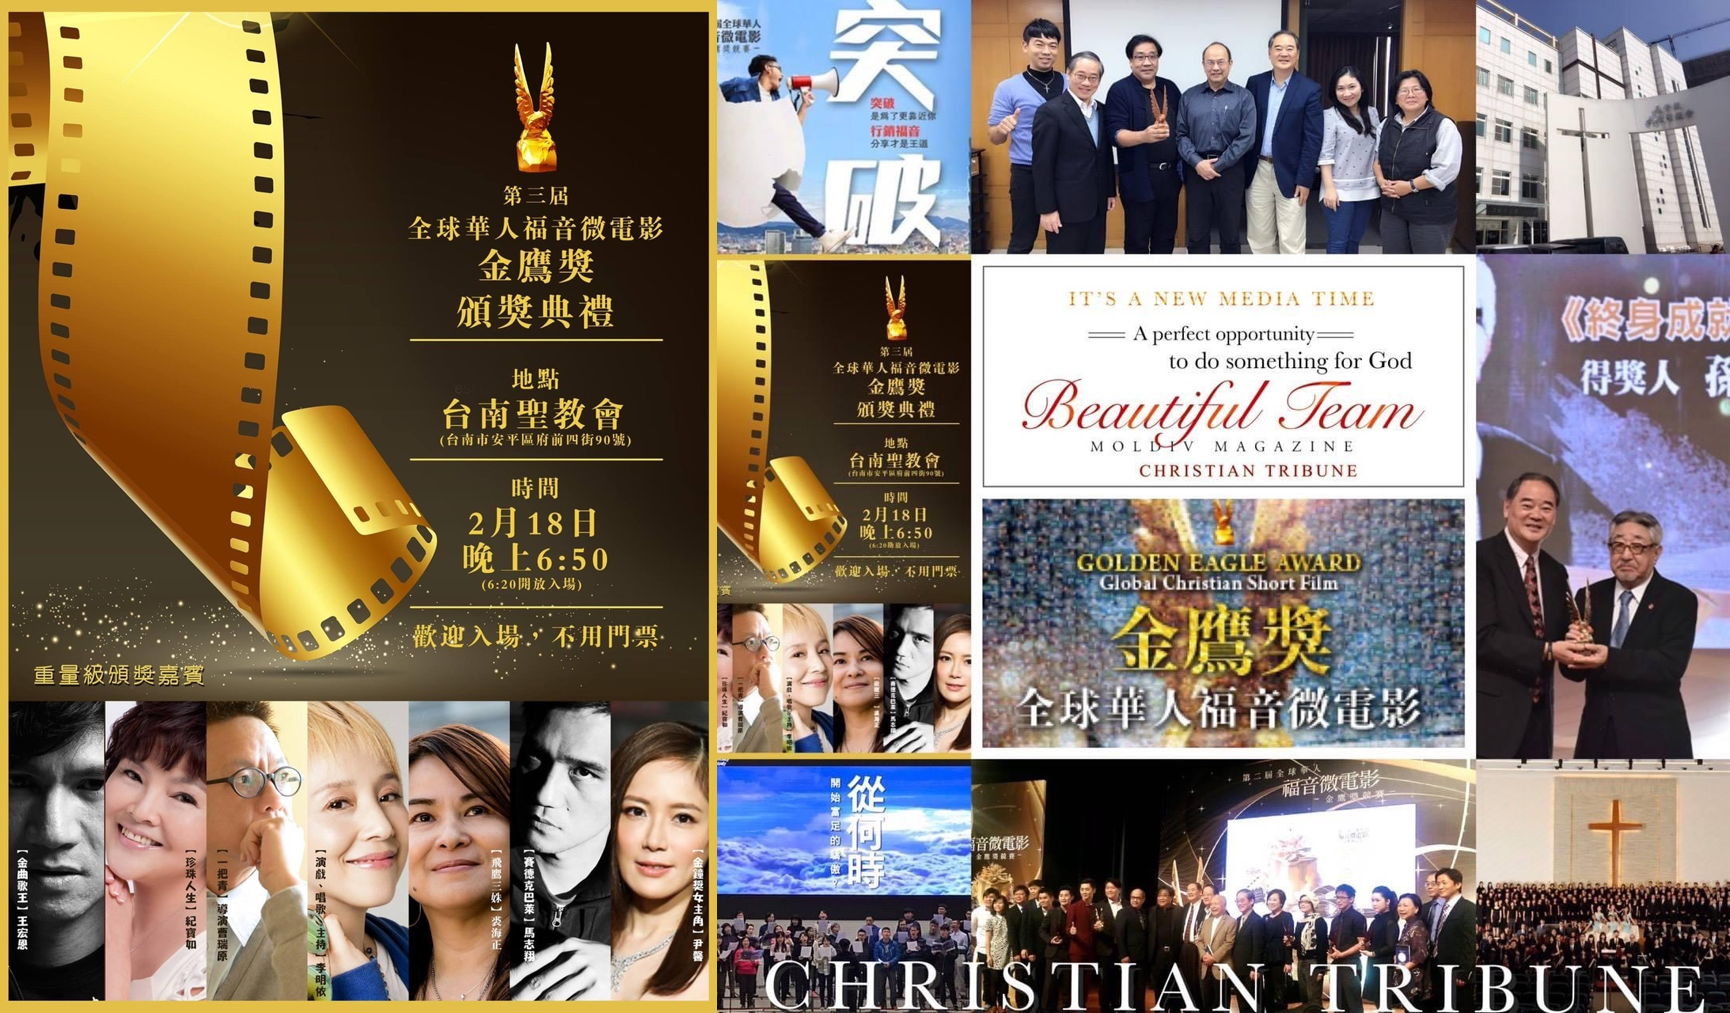 第三屆「金鷹獎」頒獎典禮從台北移師台南，在台南聖教會舉行。